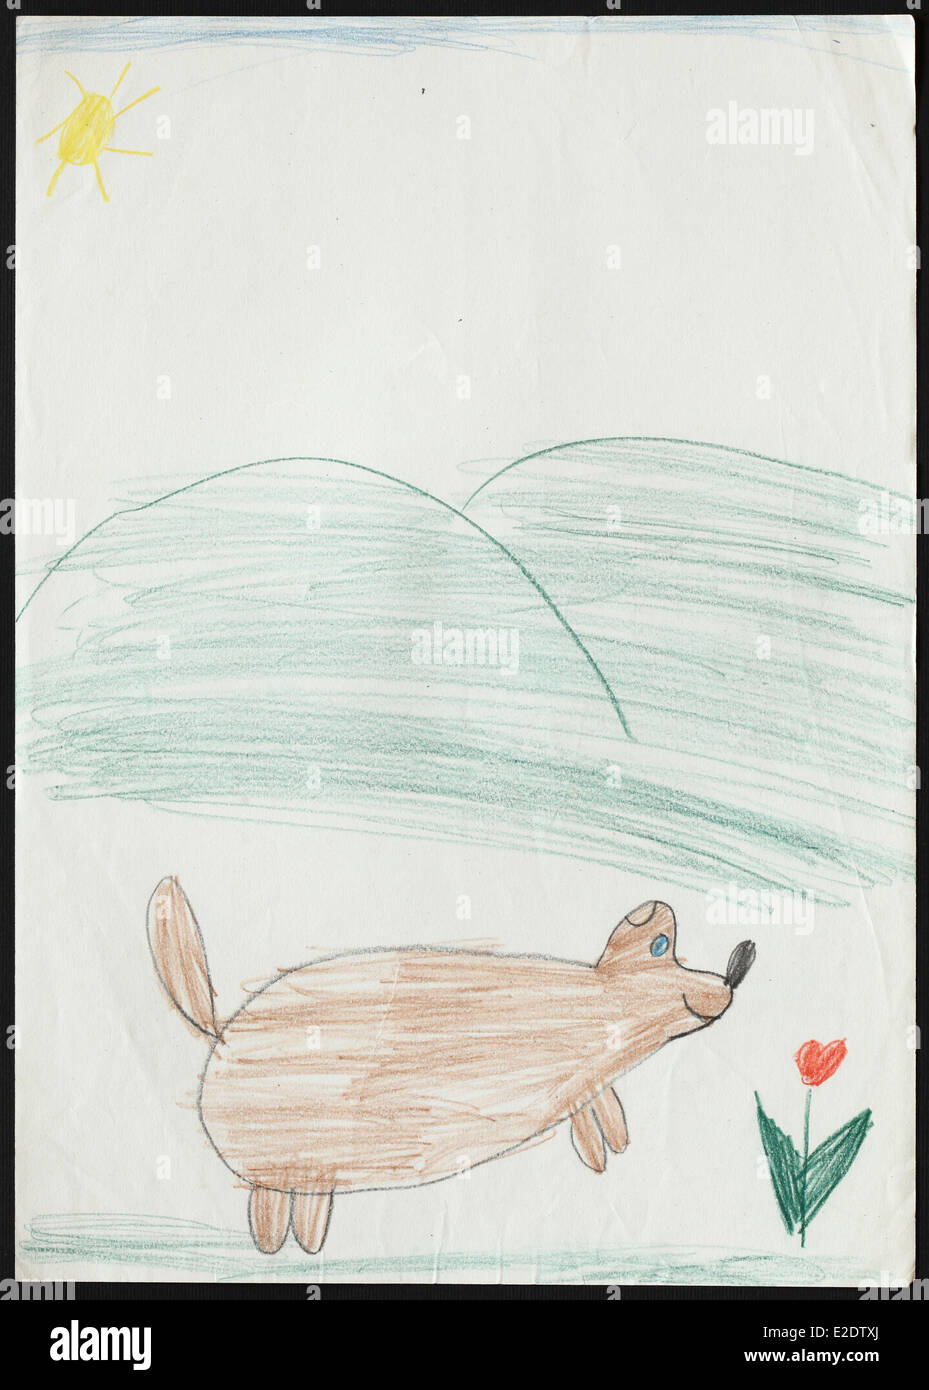 Bambino Originale Del Disegno Di Un Cane Disegnato Da Una